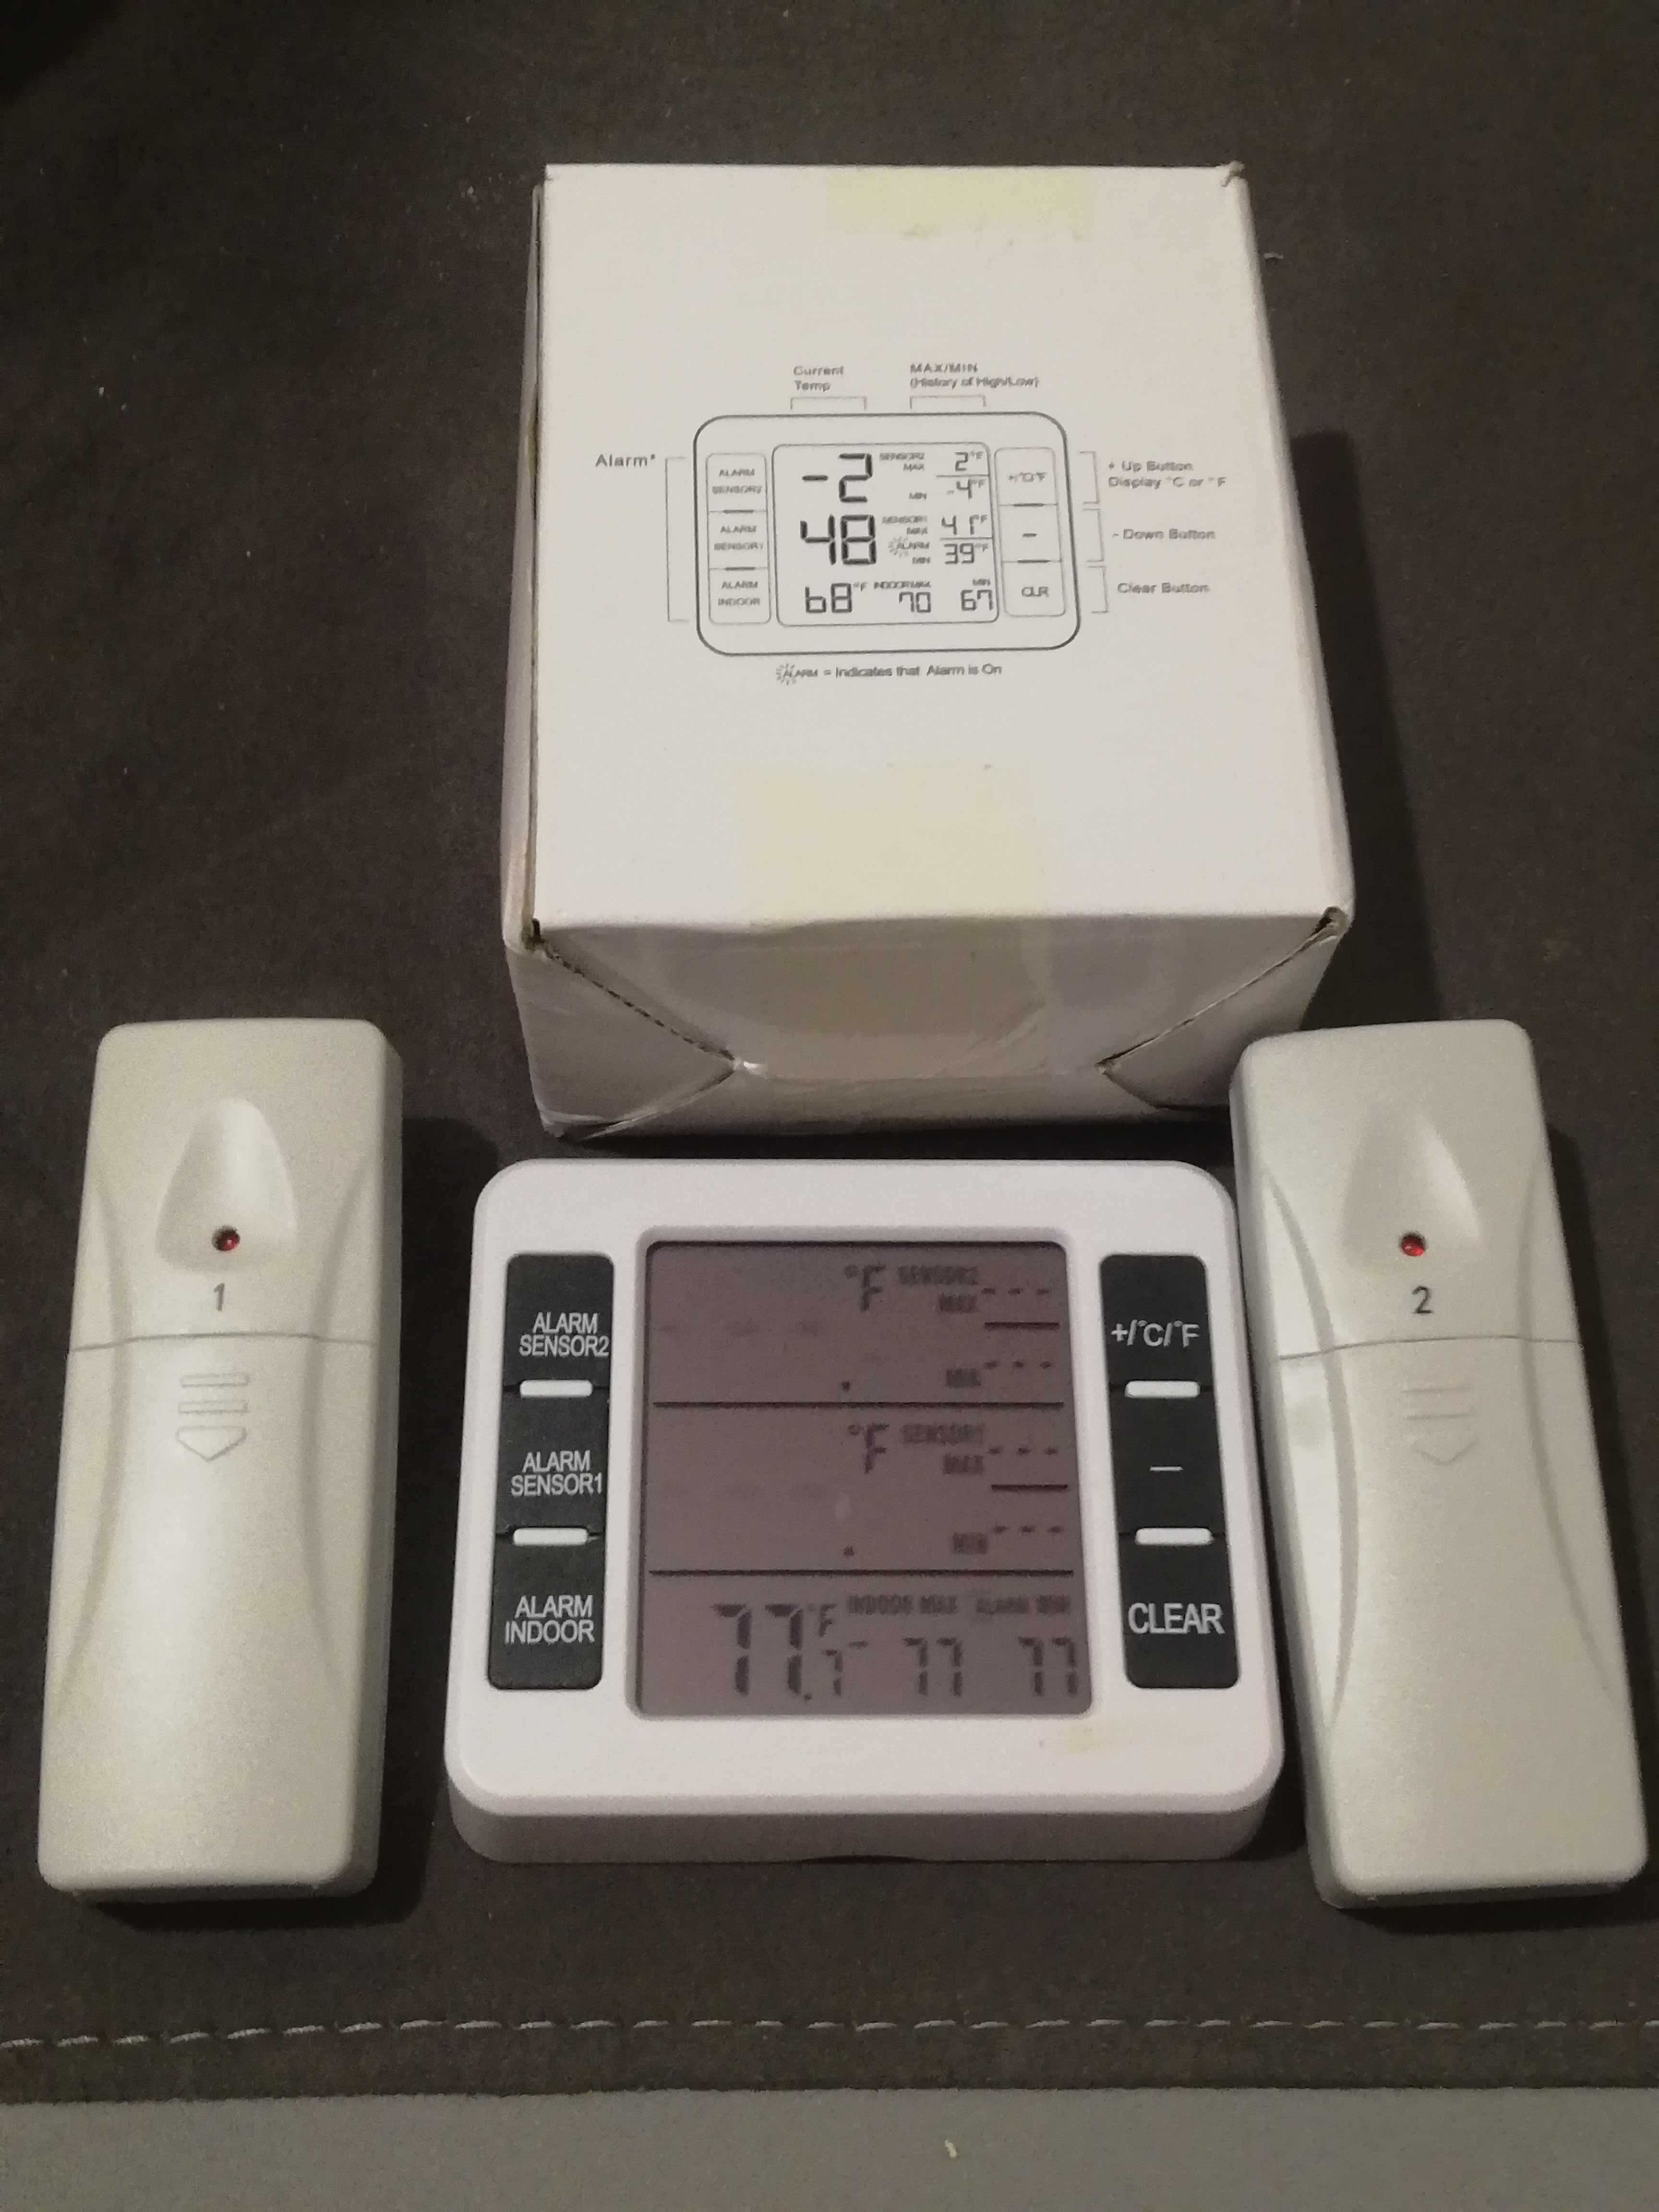 Bezprzewodowy termometr do lodówki z alarmem dźwiękowym.